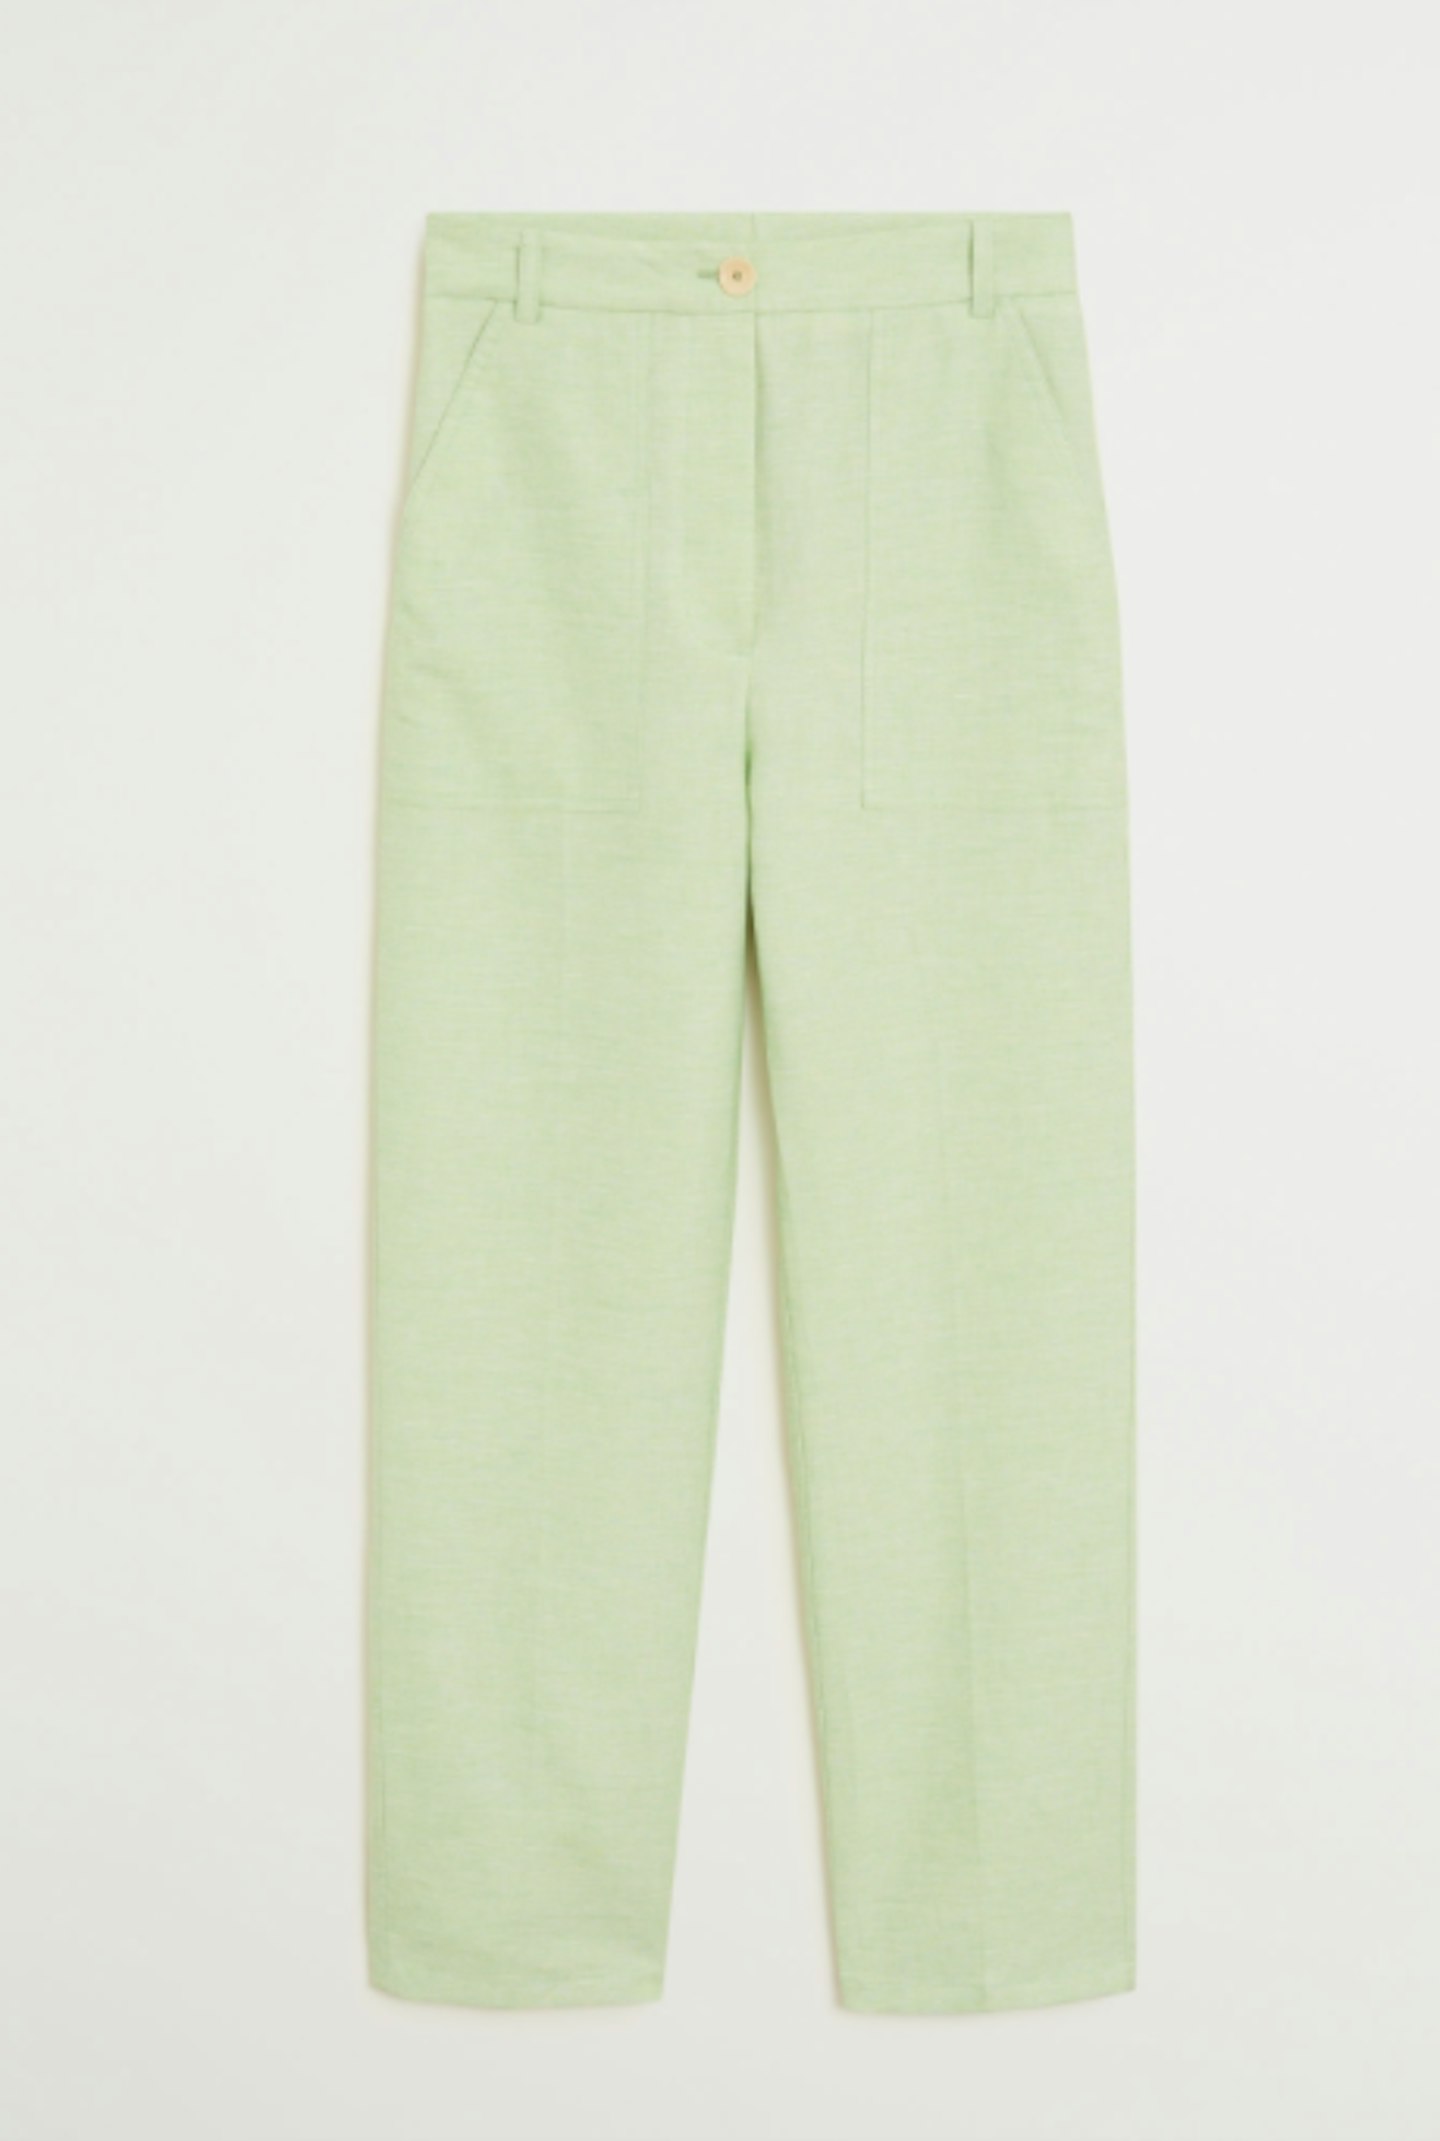 Mango, Linen Suit Trousers, £49.99